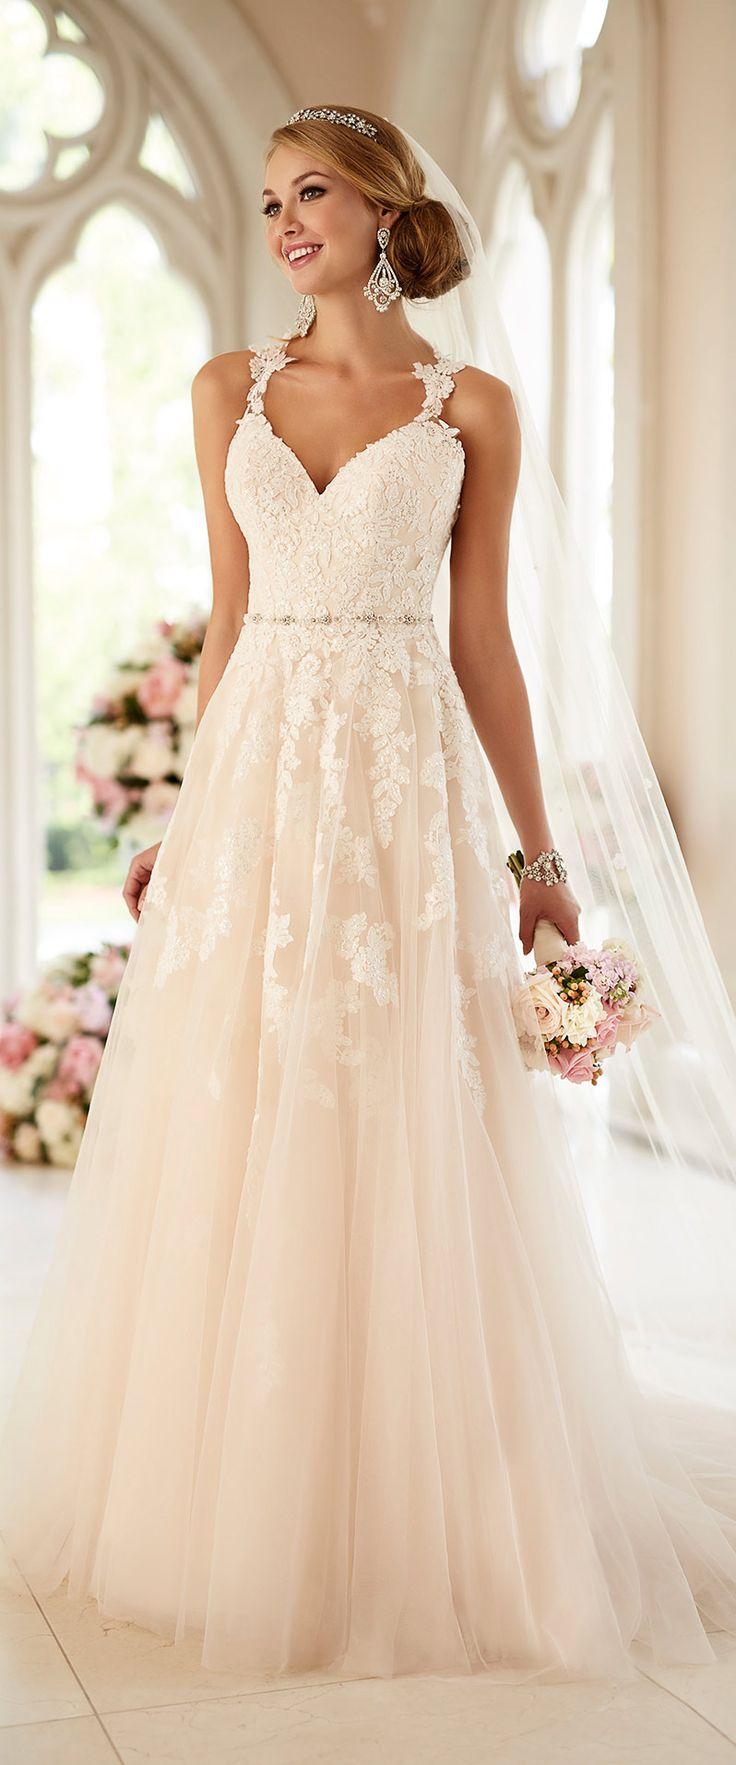 زفاف - Stella York New Wedding Dress Collection 2016